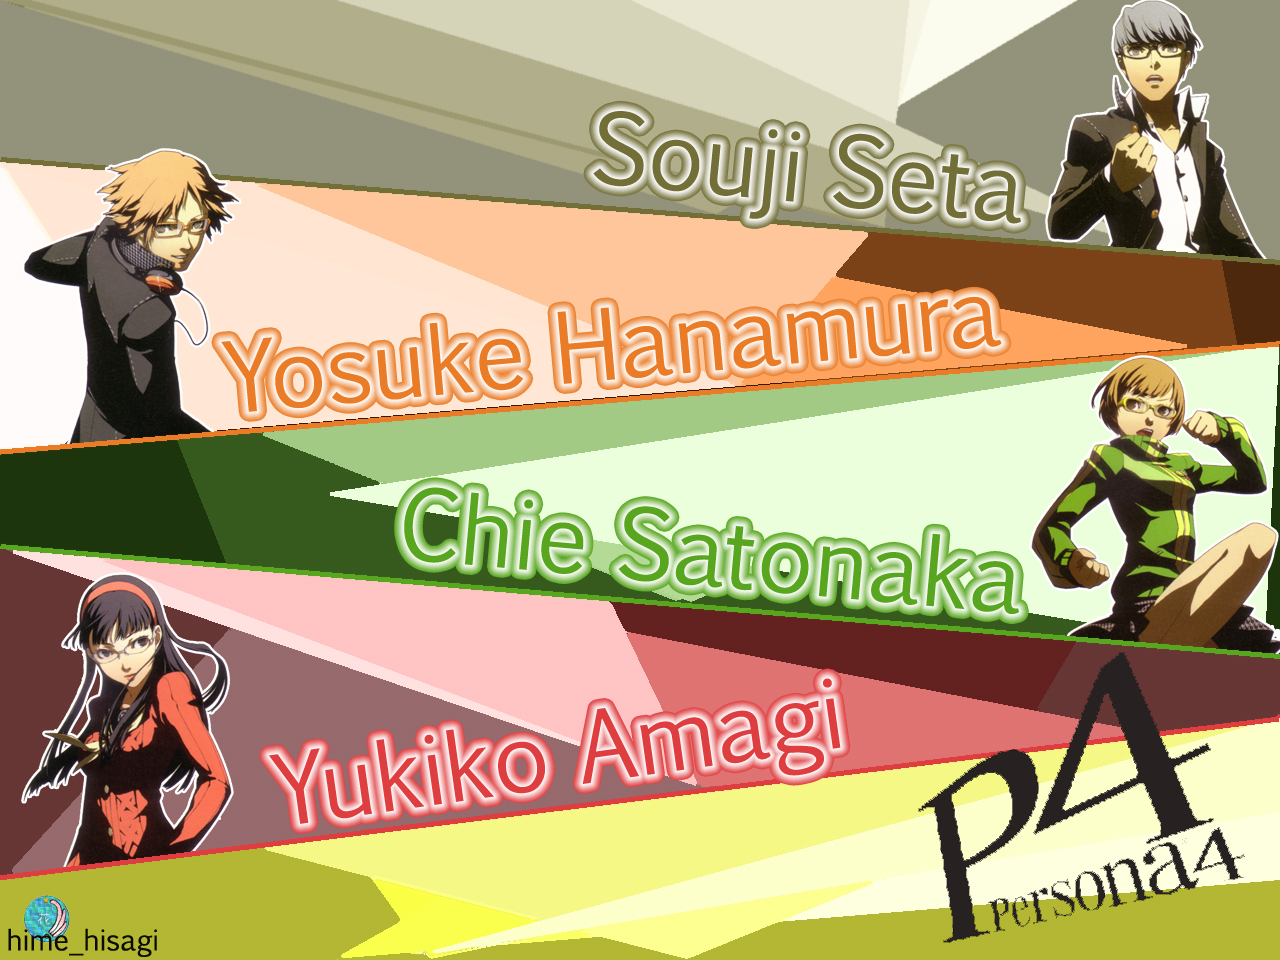 video game, chie satonaka, seta souji, yosuke hanamura, yukiko amagi, persona 4